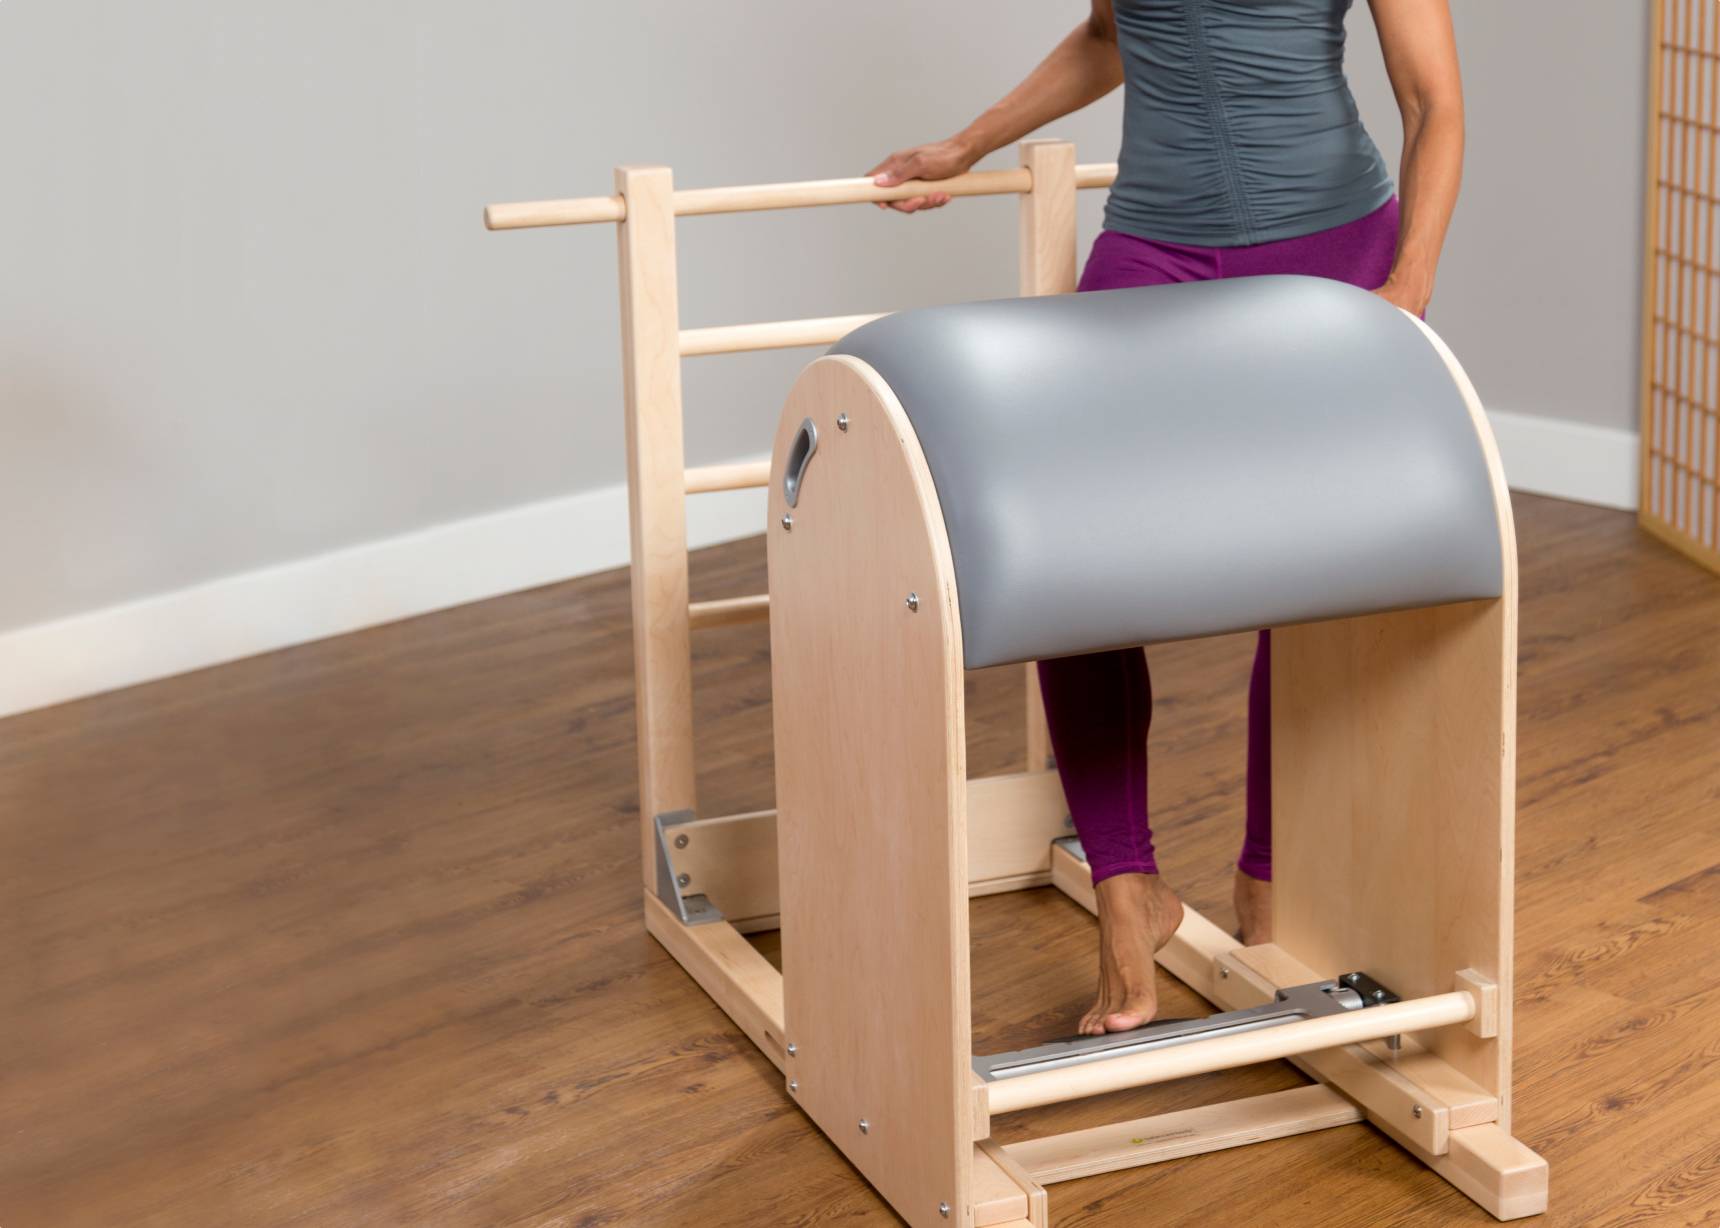 Seu Ladder Barrel pode ser o centro das atenções - Revista Pilates